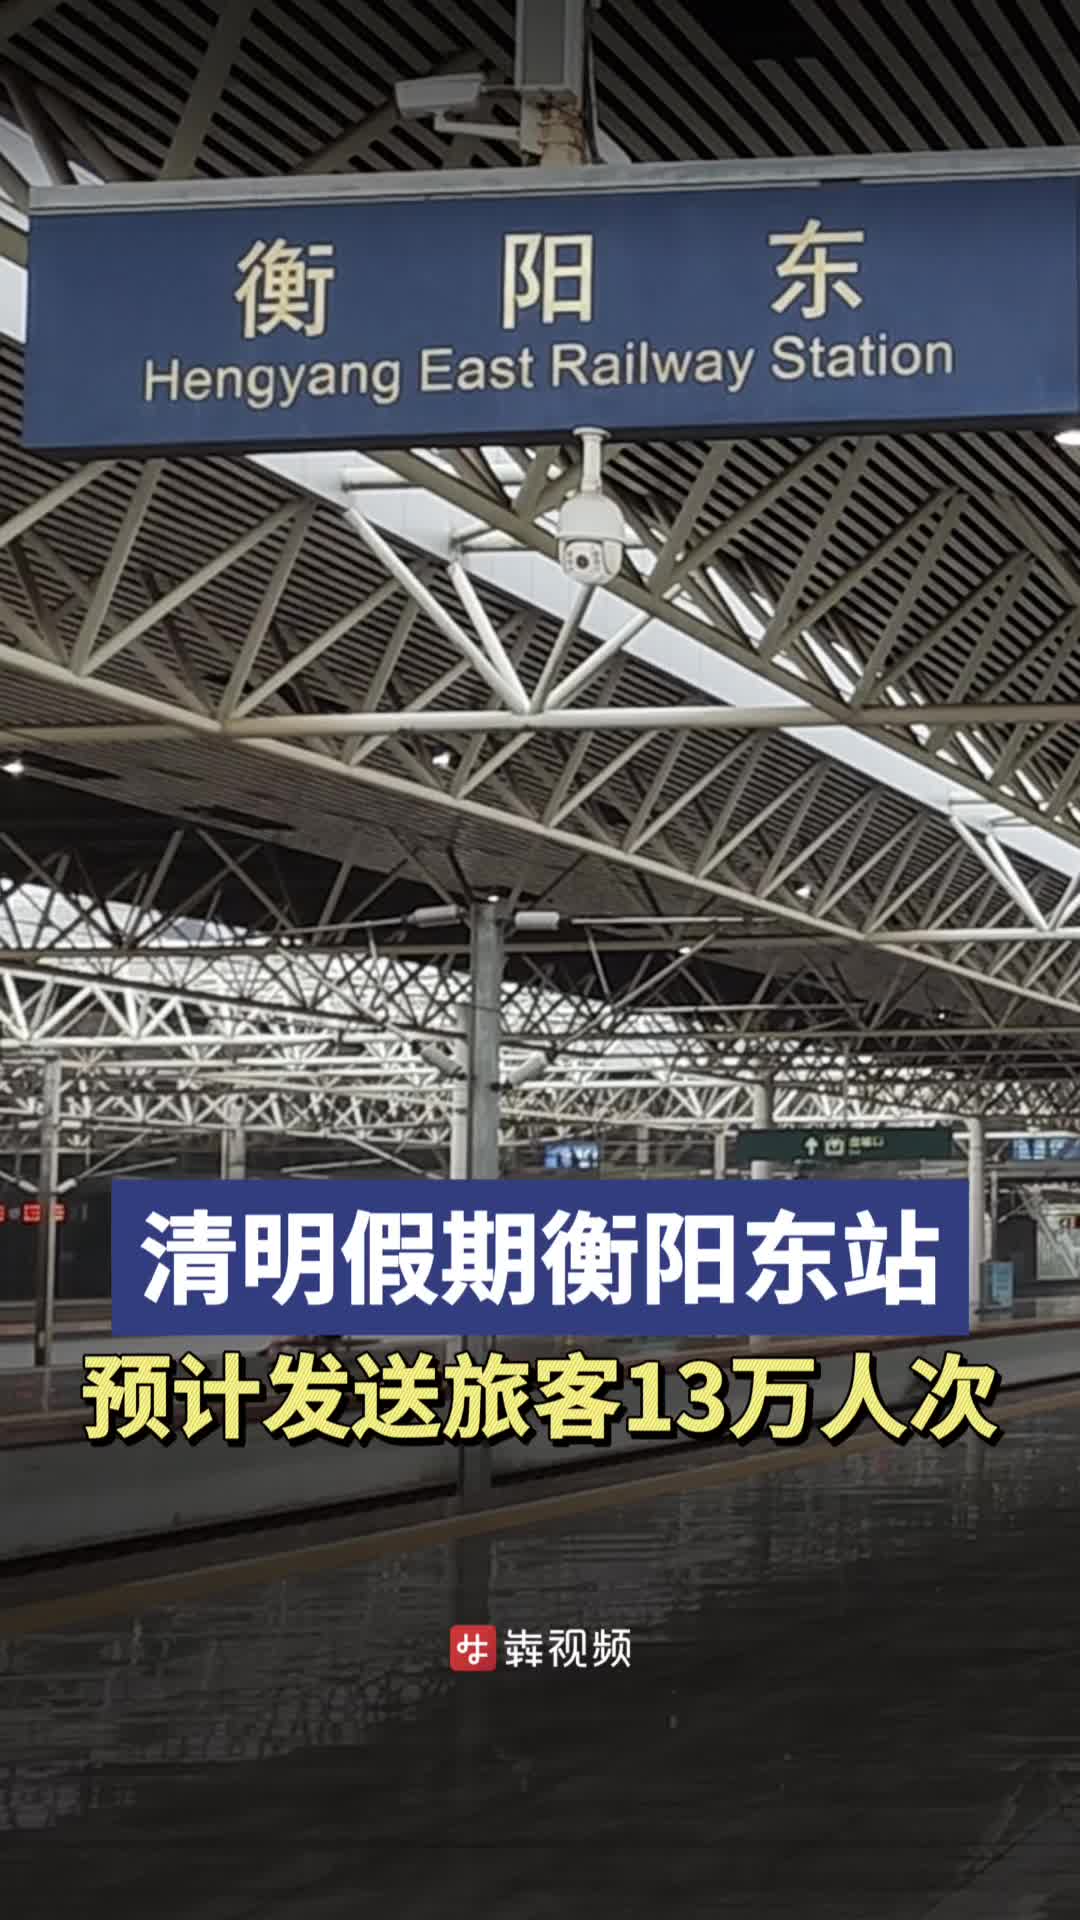 清明时节丨衡阳东站预计发送旅客13万人次，将增开临客列车11列